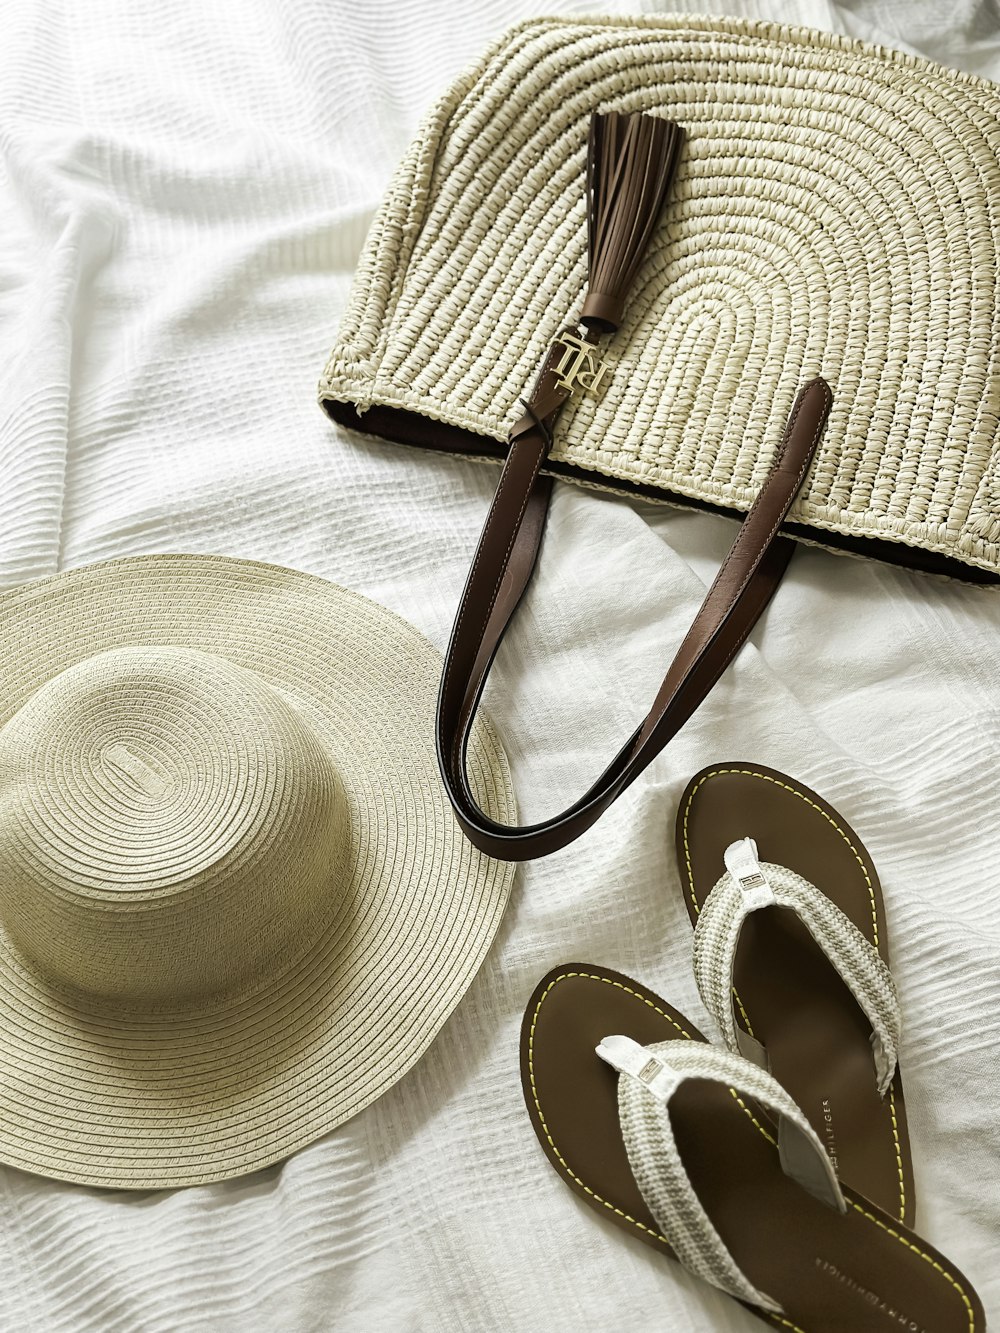 모자, 샌들, 침대 위의 지갑